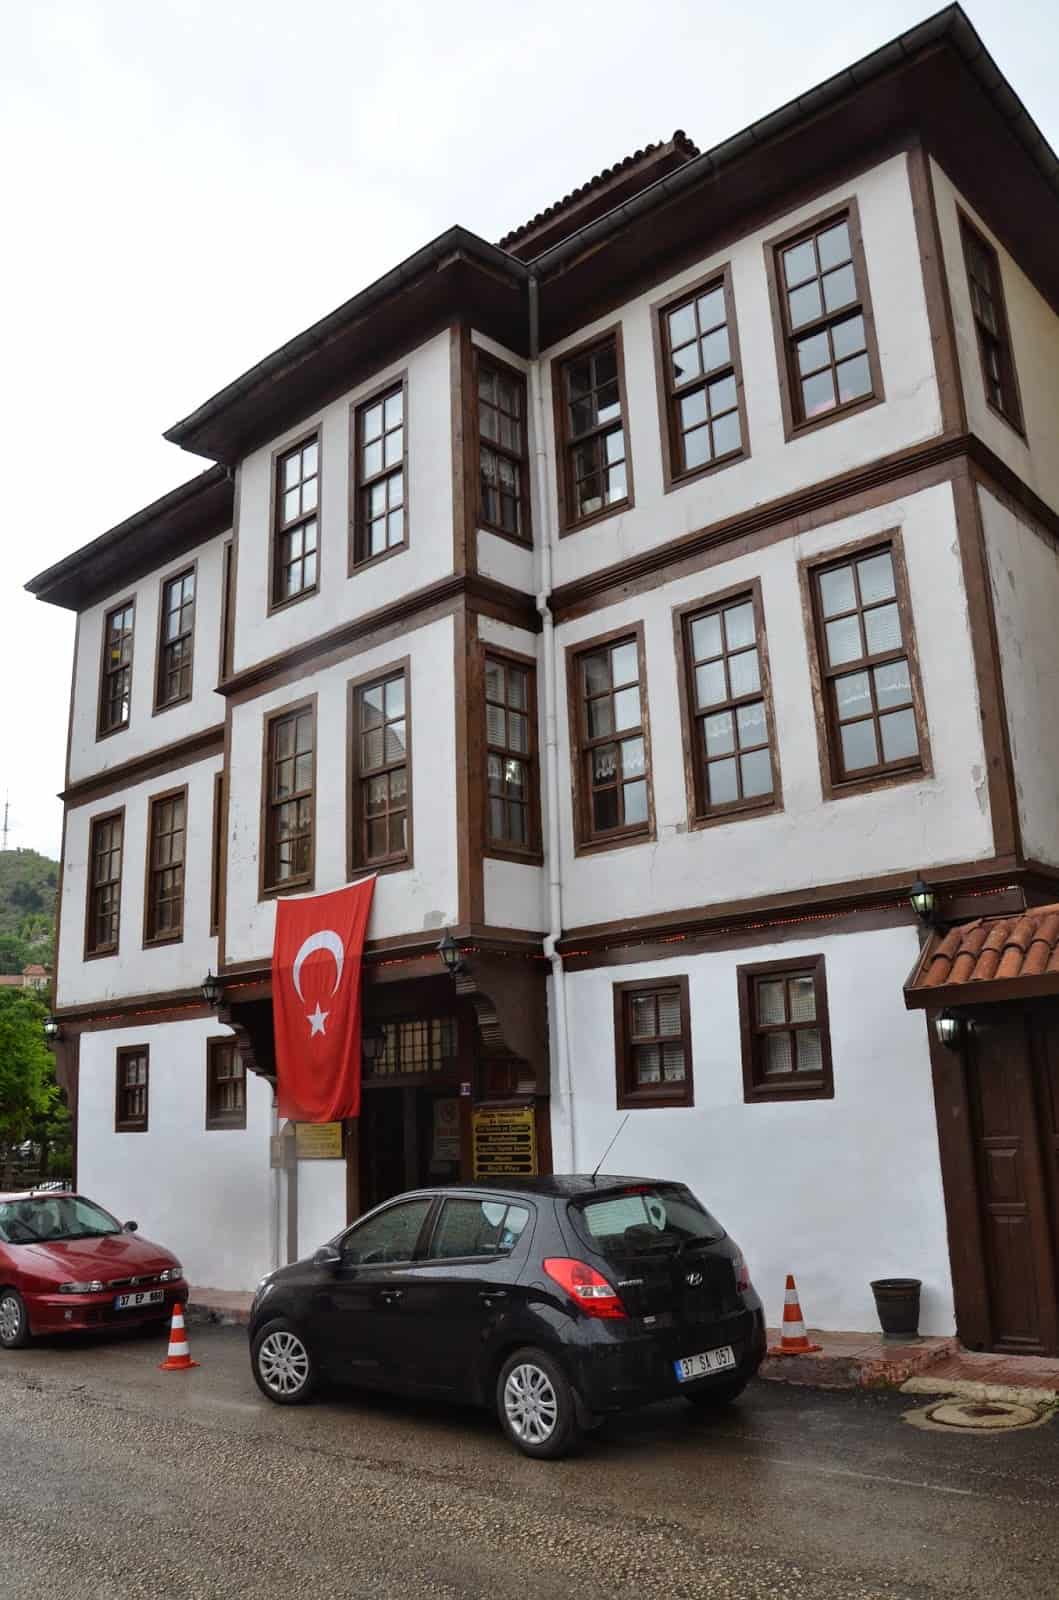 Eflanili Mansion in Kastamonu, Turkey